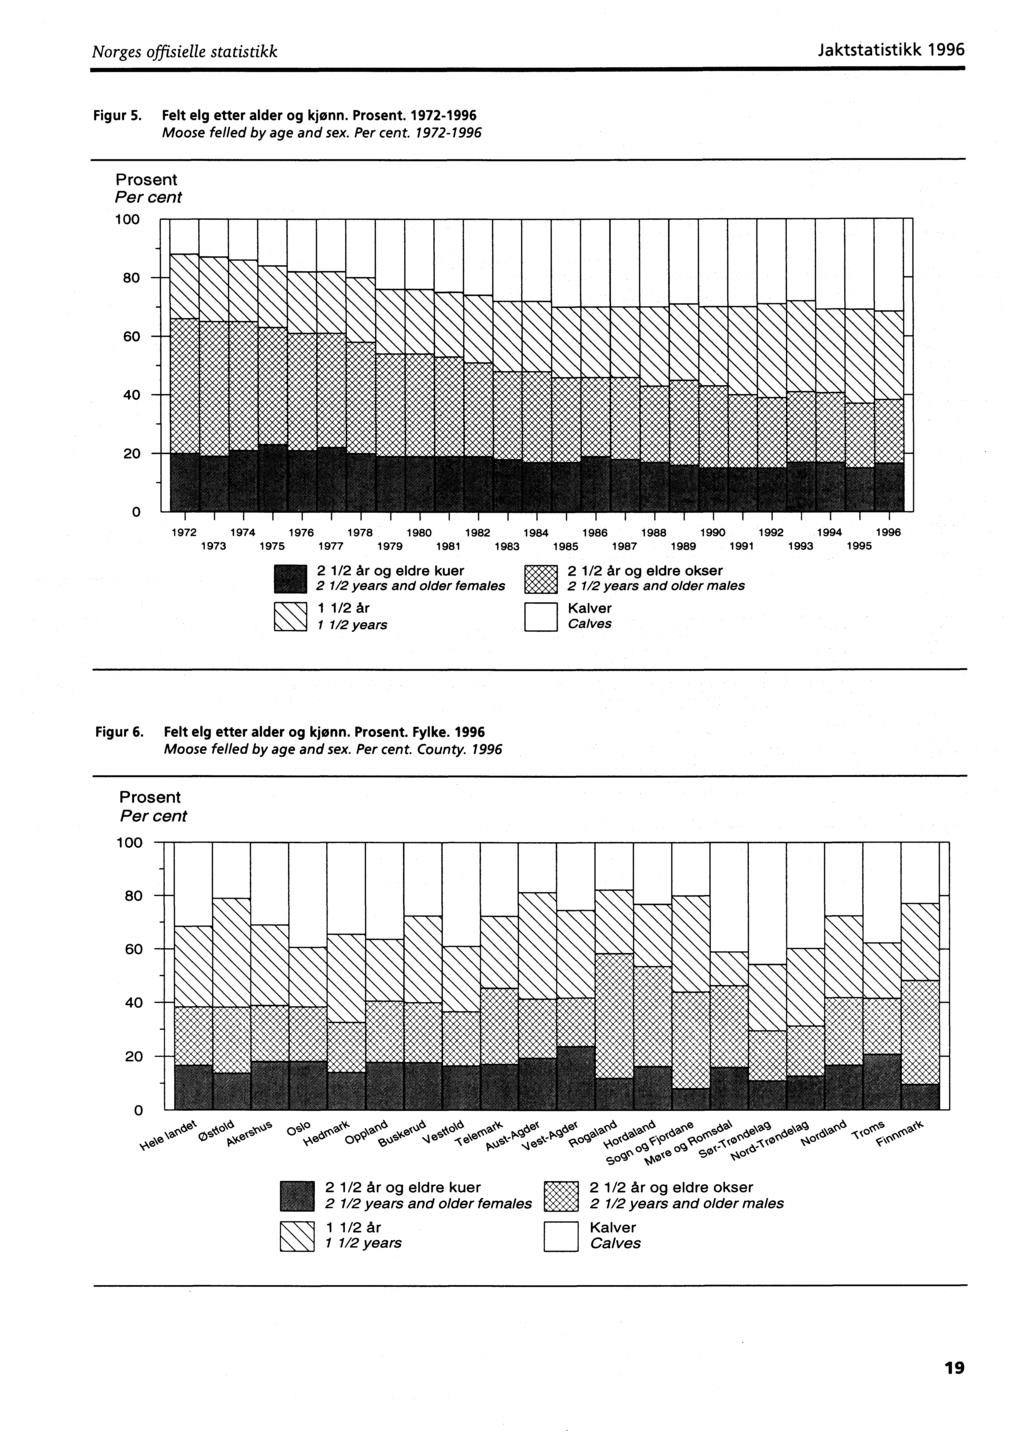 Norges offisielle statistikk Jaktstatistikk Figur 5. Felt elg etter alder og kjønn. Prosent. 1972- Moose felled by age and sex. Per cent. 1972- Prosent Per cent 1. 11111 1,1"P,Illi.i,i,l,1,1.,.1,11,11,1 100 80 1,.